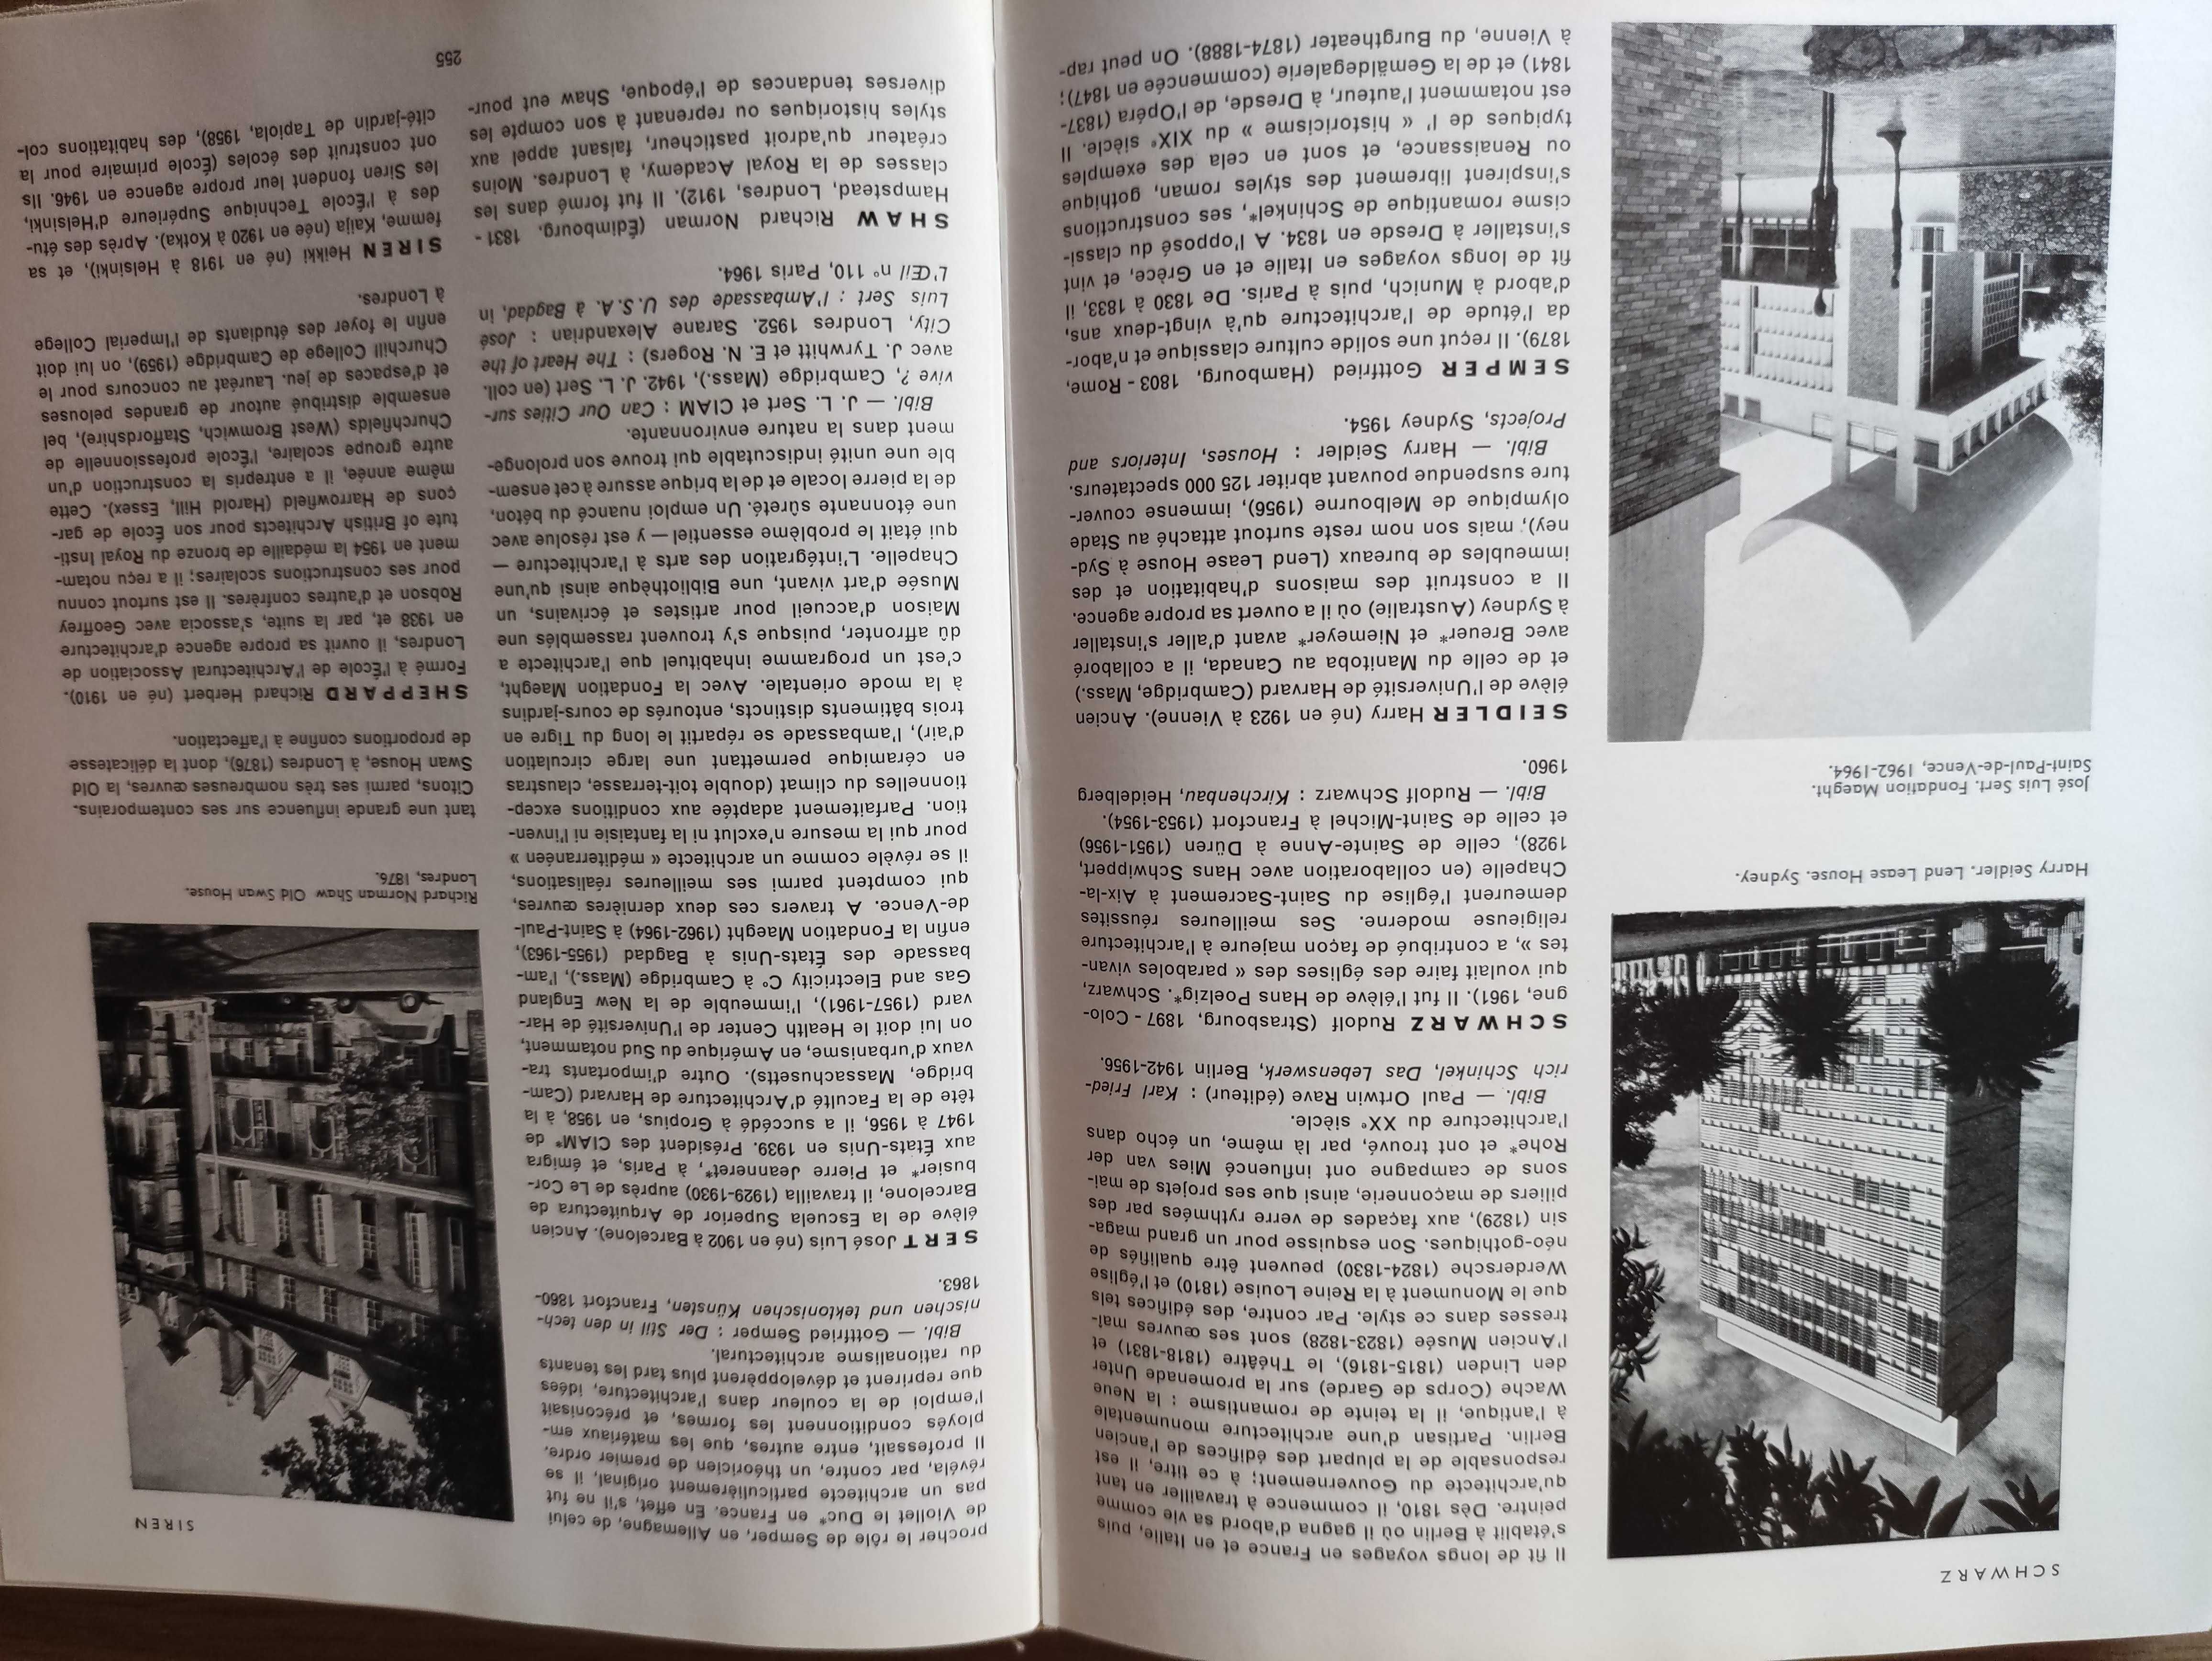 Dictionaire de l'architecture moderne - Fernand Hazan / unikat!